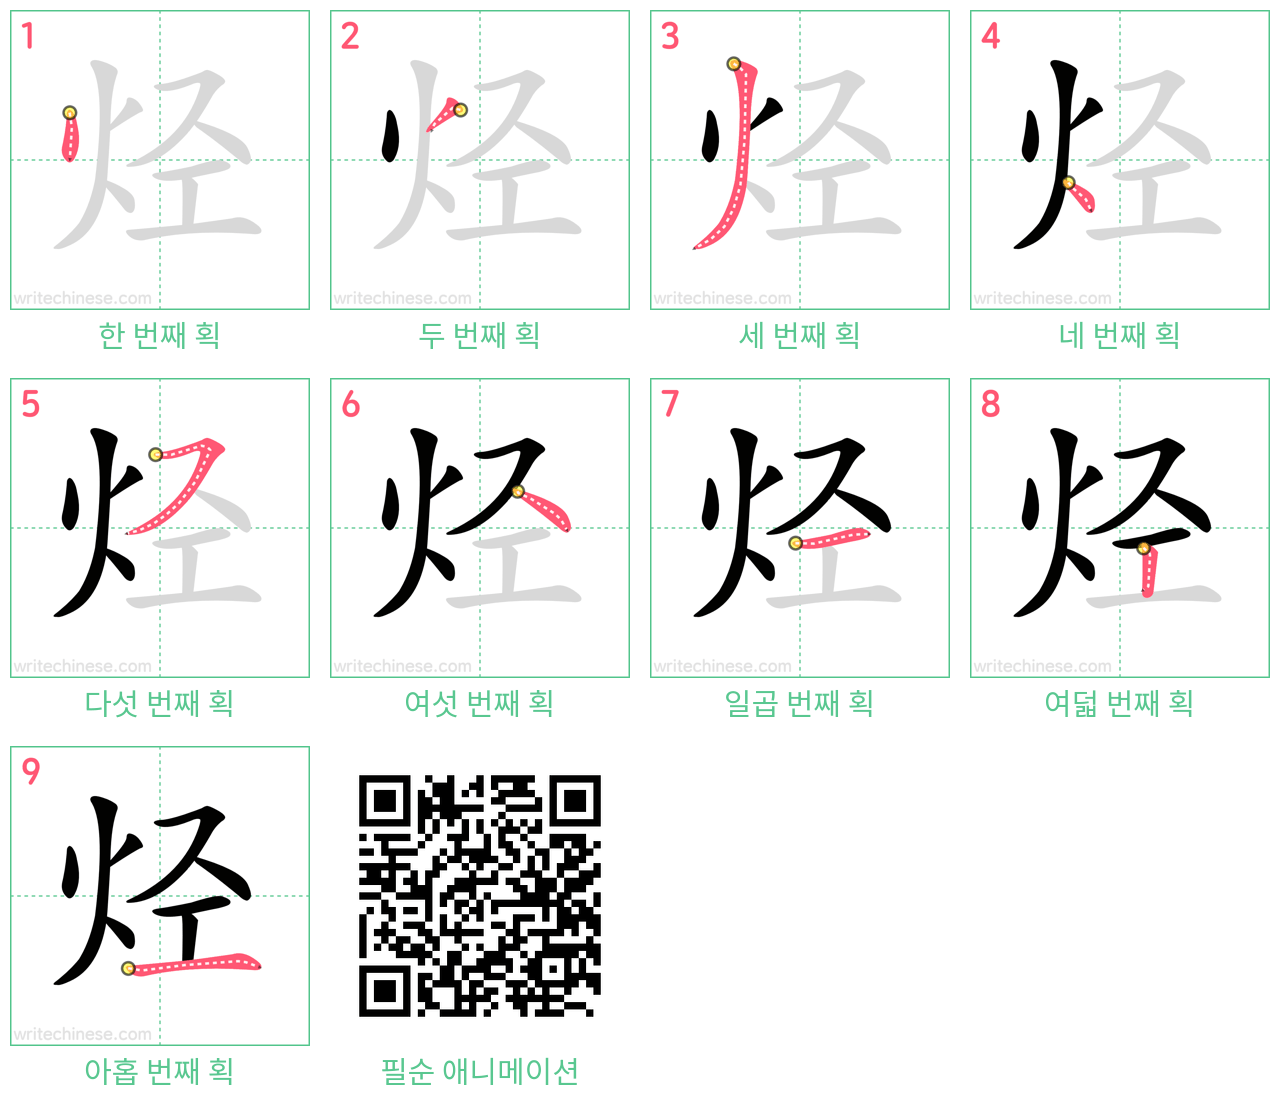 烃 step-by-step stroke order diagrams